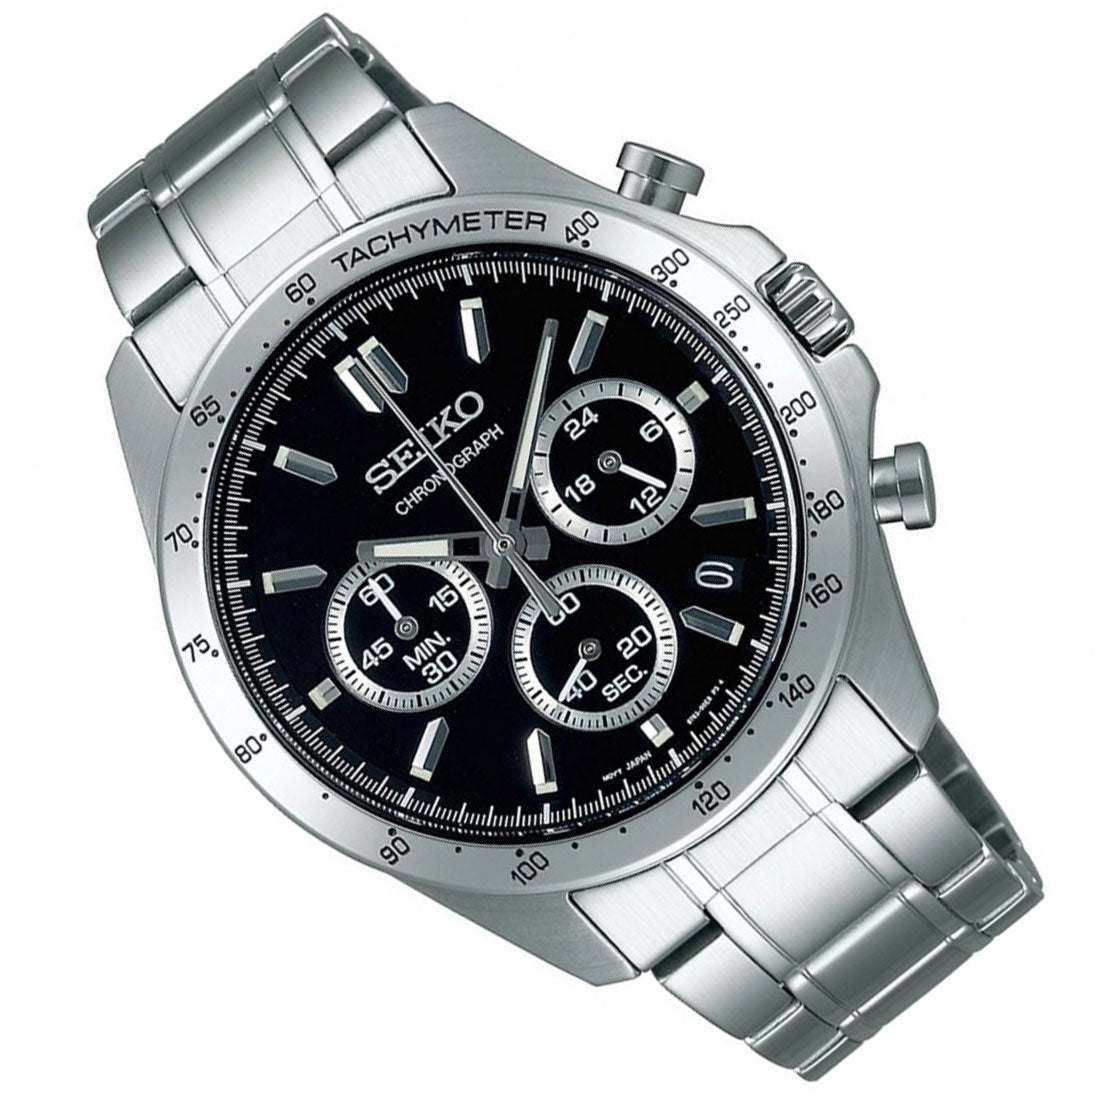 Seiko Spirit SBTR013 JDM Selection Chronograph Black Dial Quartz Stainless Steel Watch -Seiko